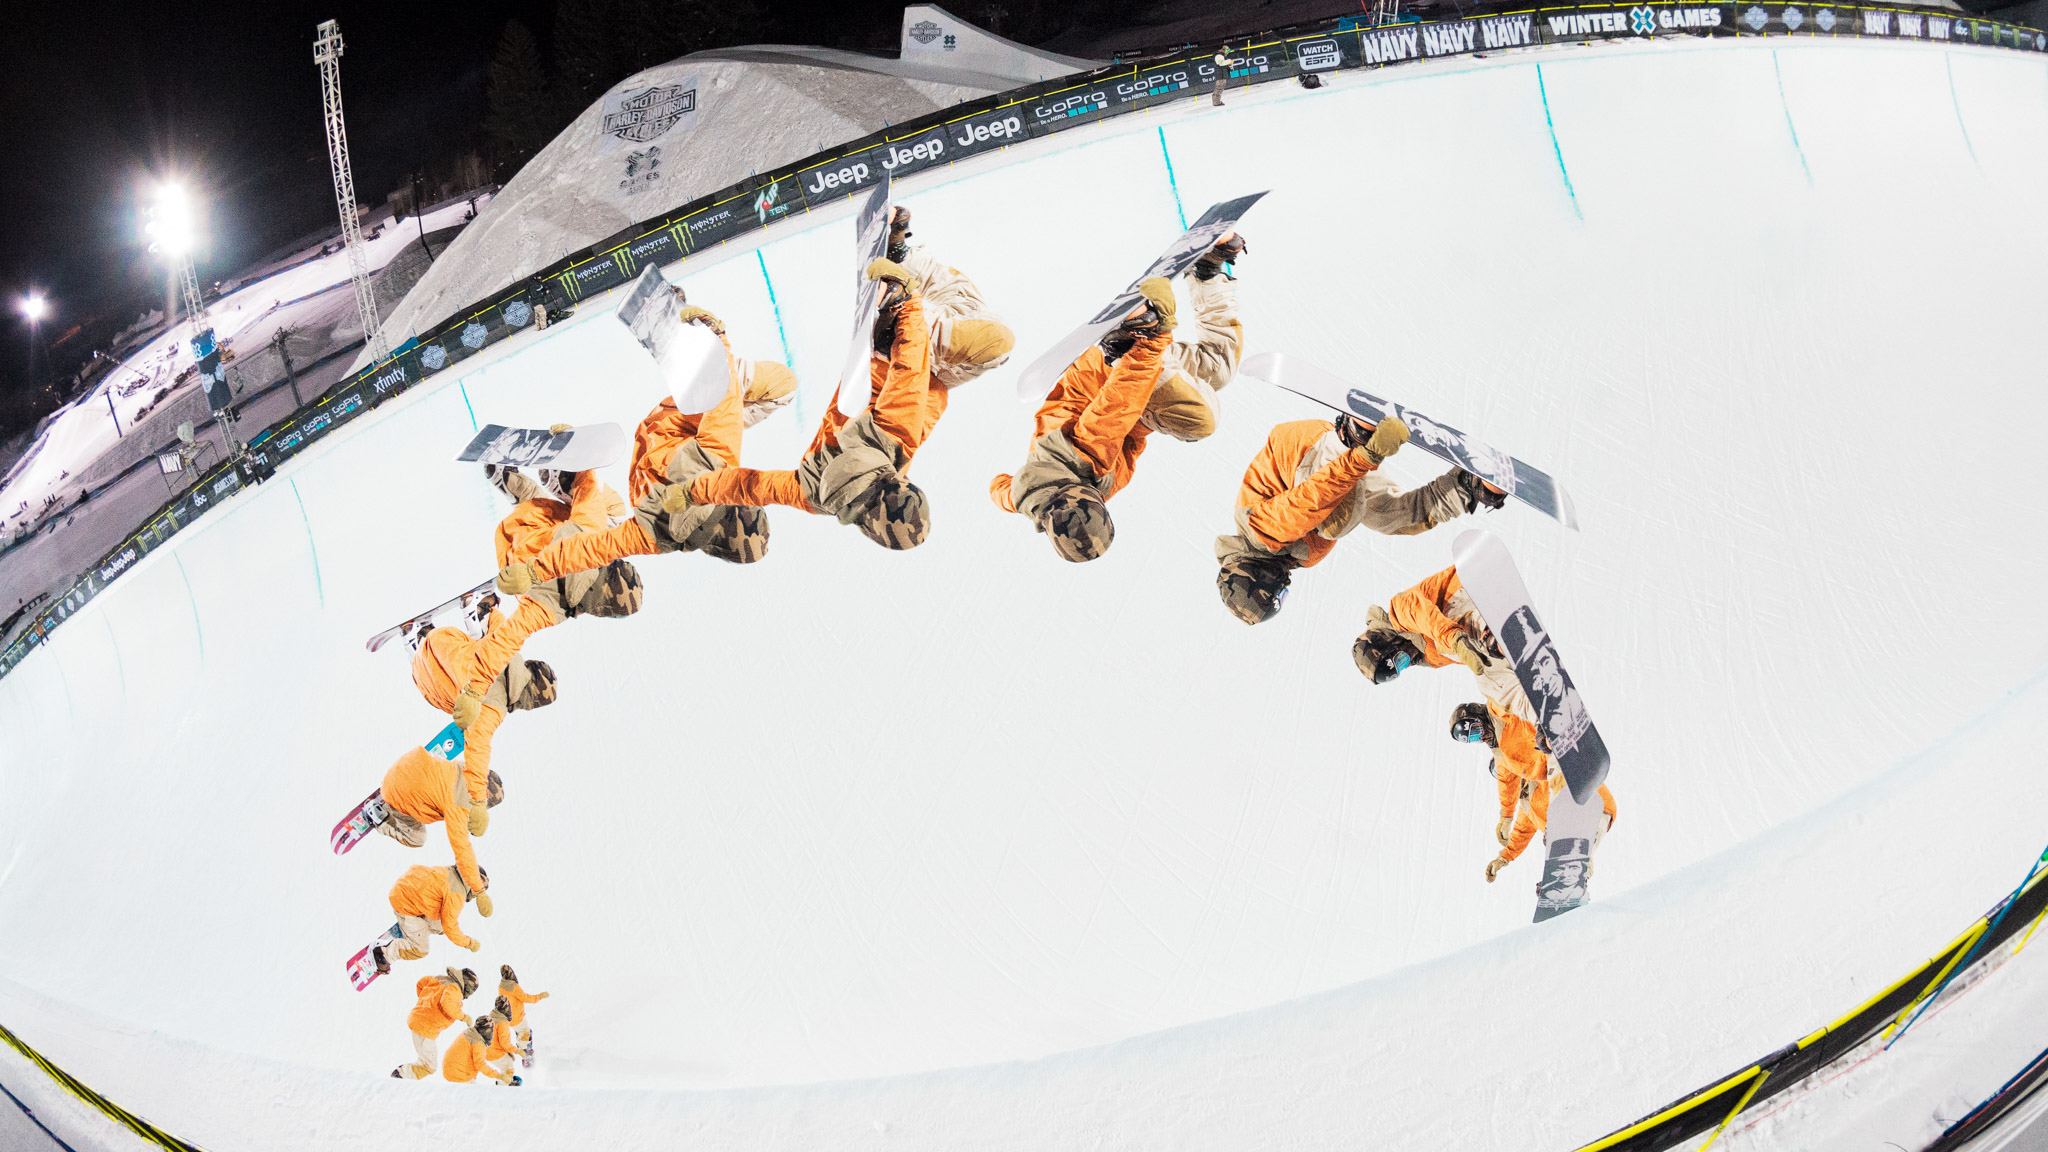 Men's Snowboard SuperPipe